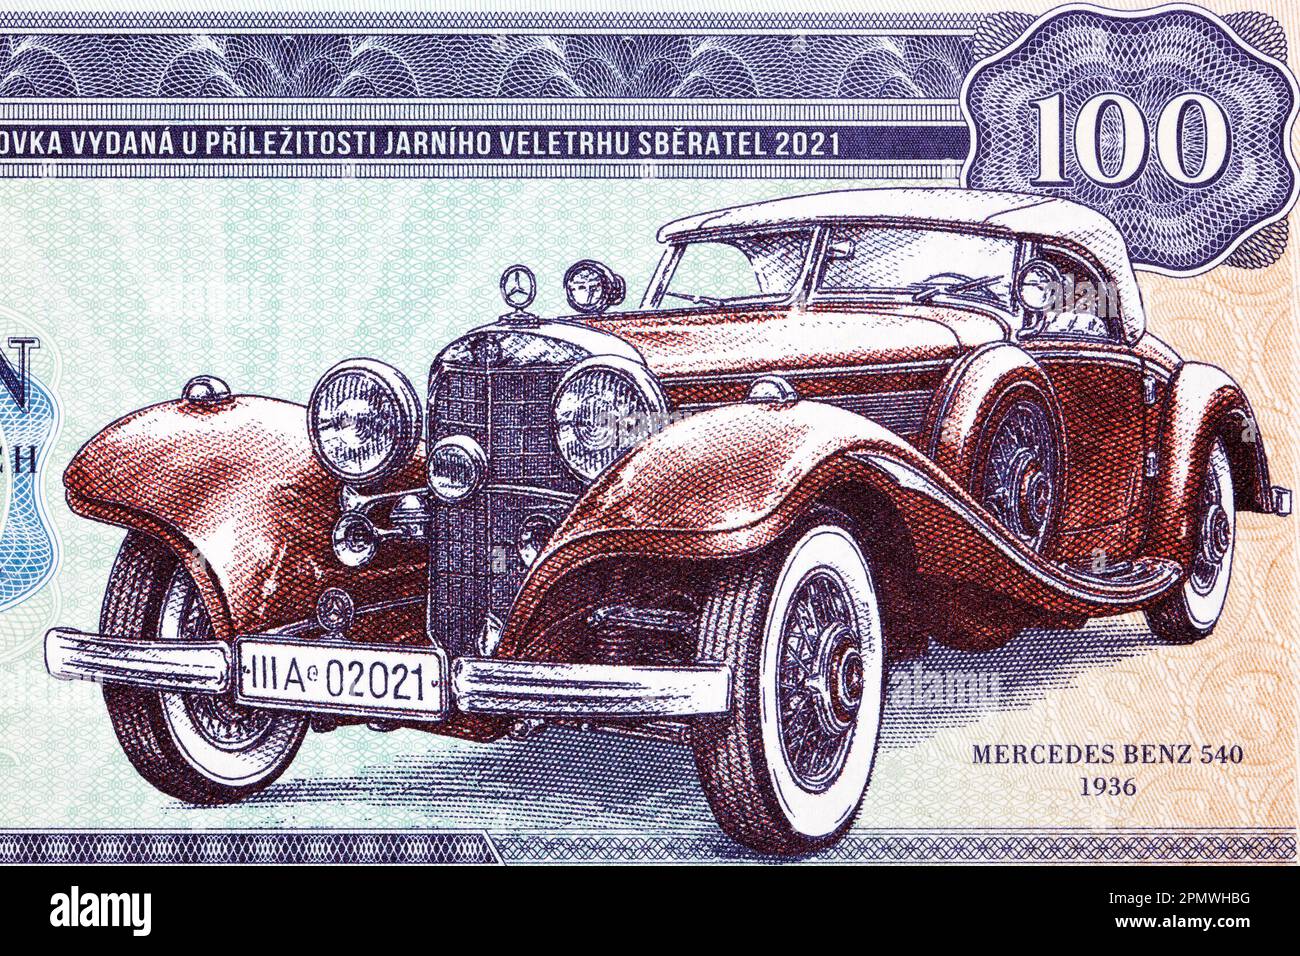 Old car from Czechoslovak money - koruna Stock Photo